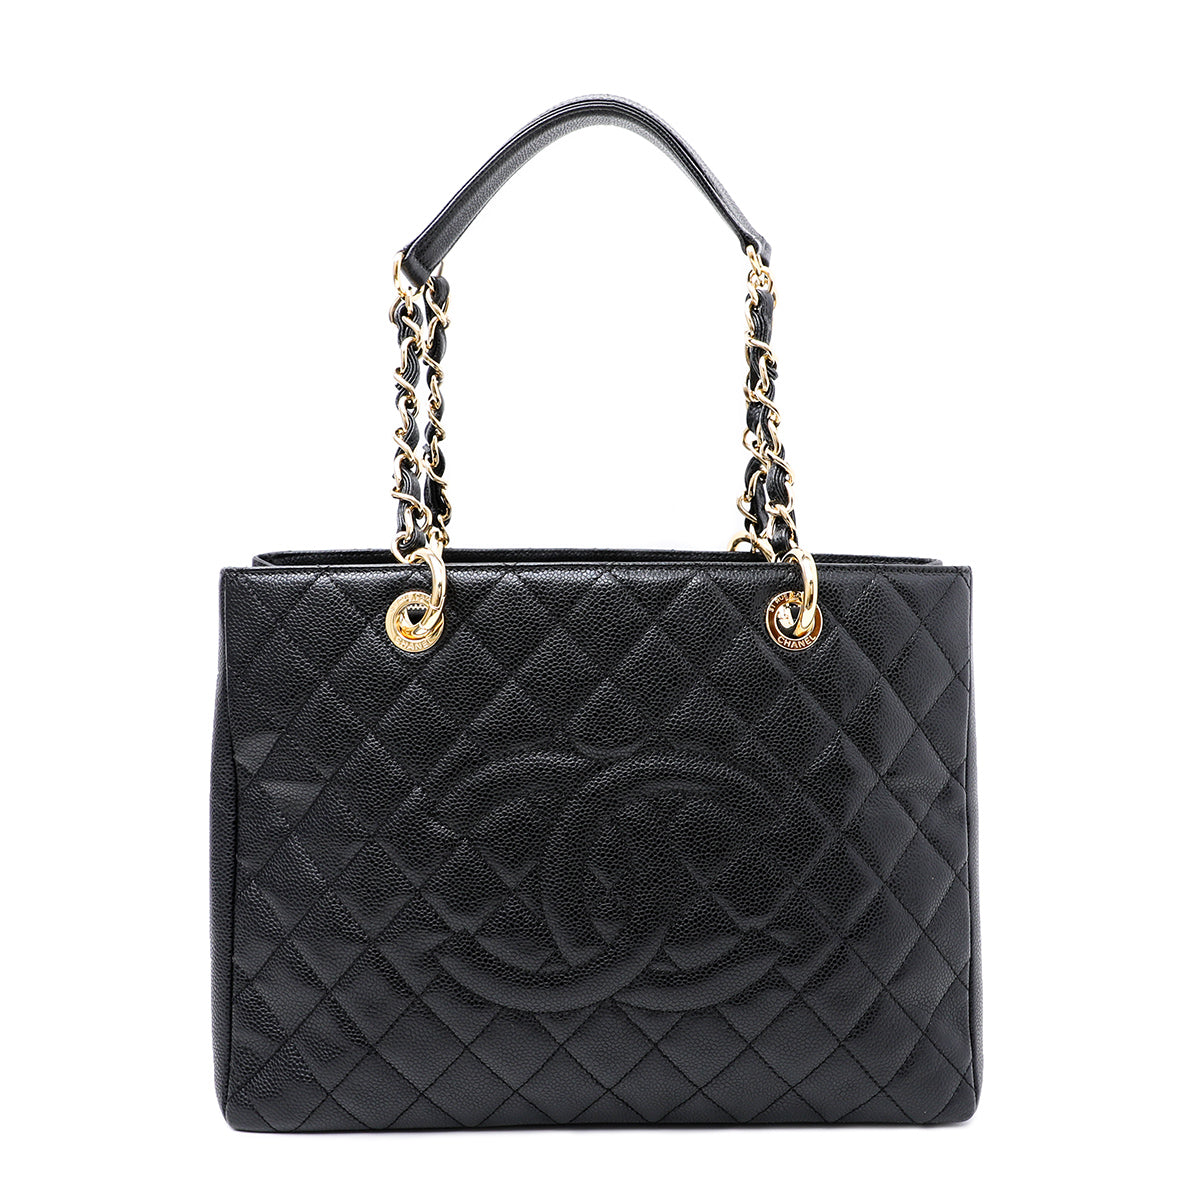 Chanel Black Gst Tote Bag